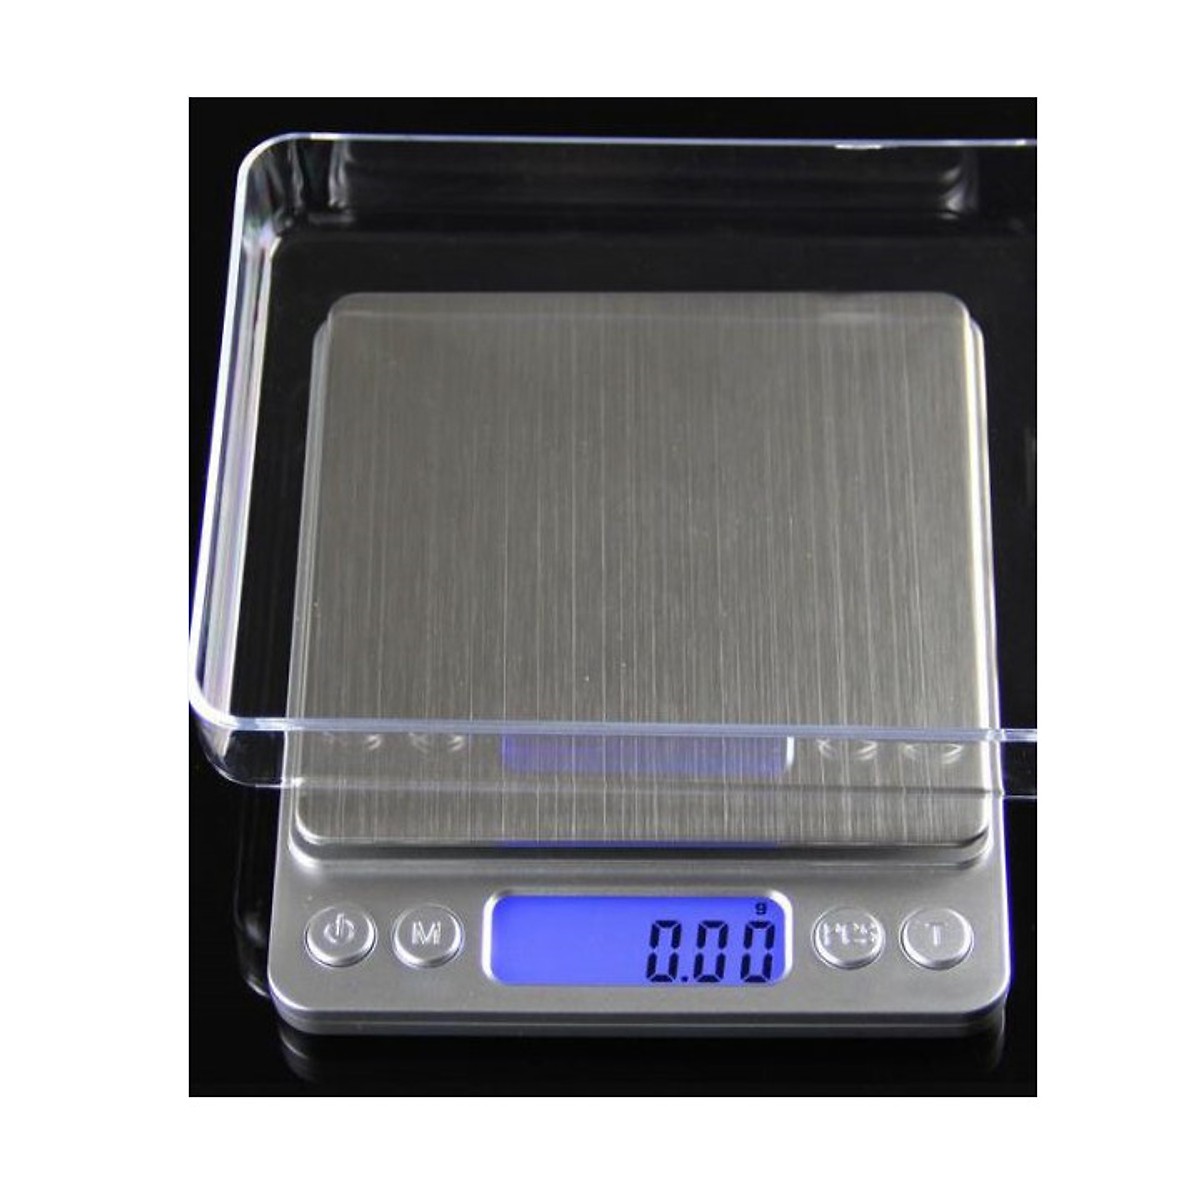 Cân tiểu ly điện tử dùng trong bếp gia đình, độ chính xác lên tới 0.01 gram